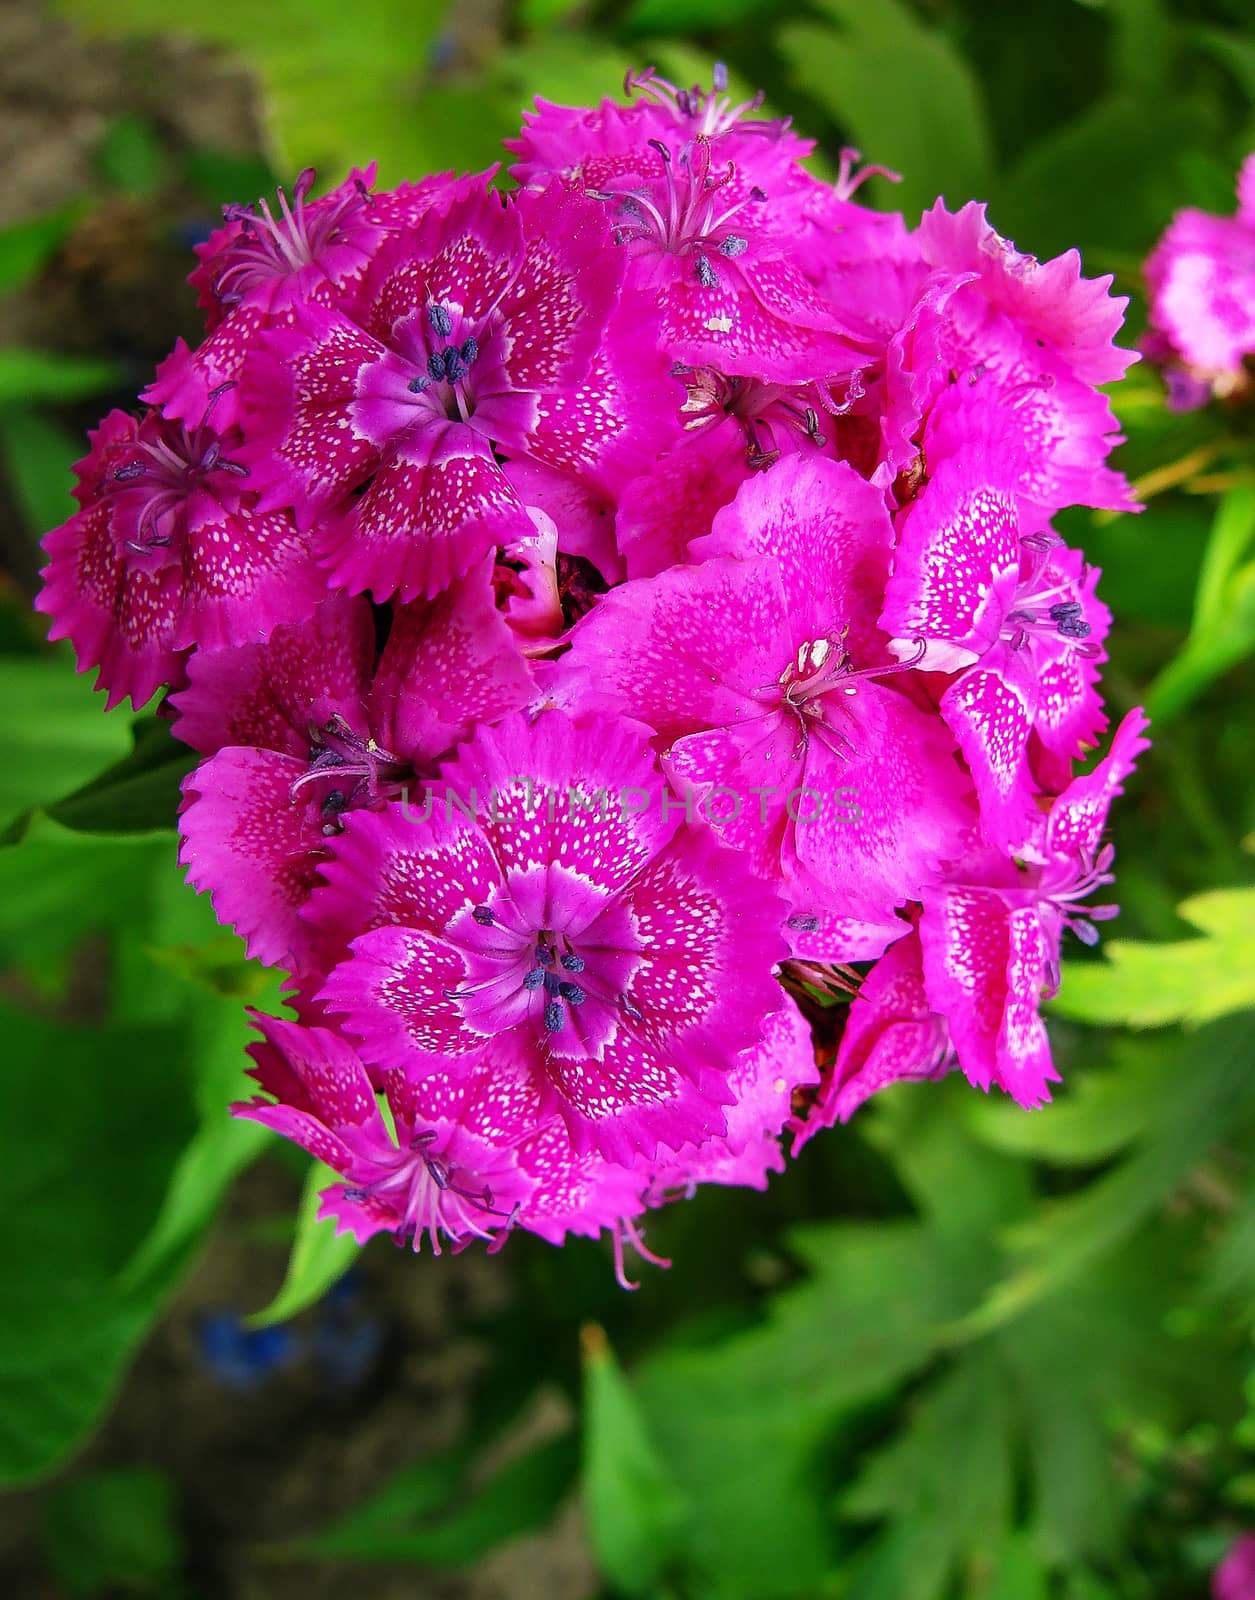 Flowers phlox - genus of herbaceous plants            